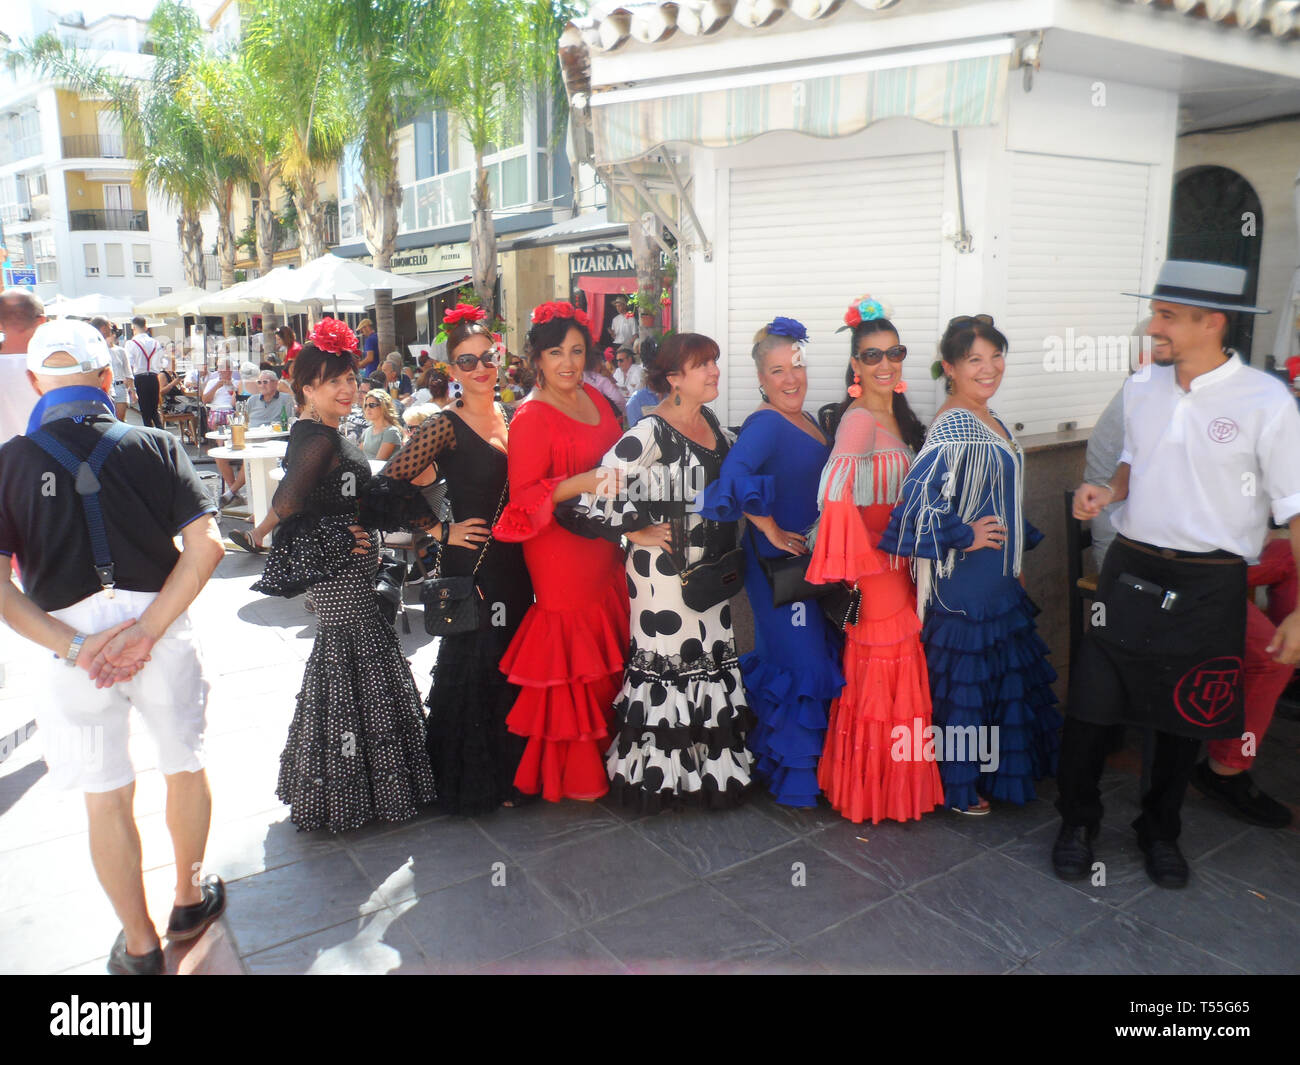 Las mujeres españolas locales vestidos con los tradicionales trajes de flamenca que asistieron a la Feria del Rosario. Una feria anual de la comunidad en Fuengirola, Costa sol Fotografía de -